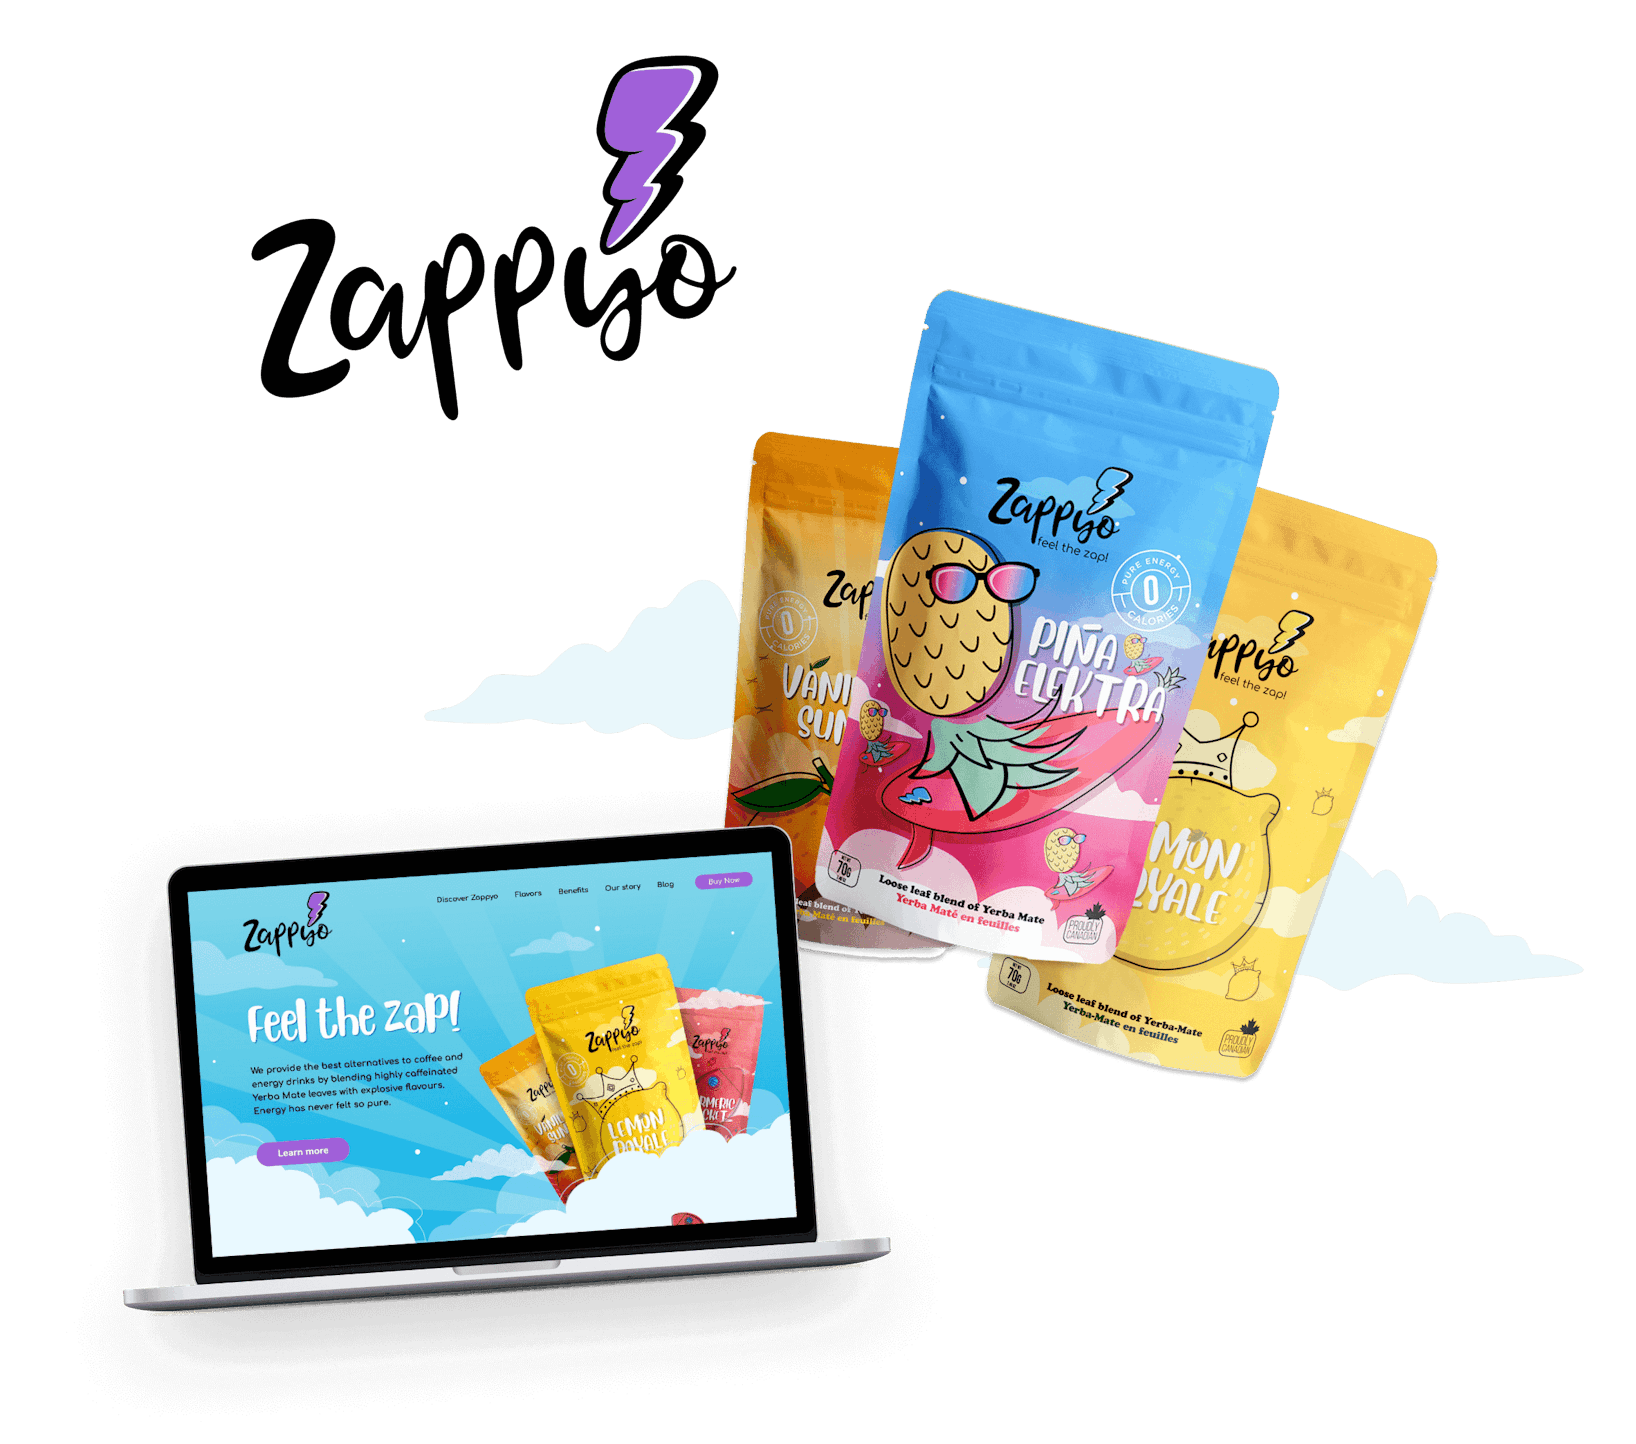 Farbenfrohe Logo-, Verpackungs- und Website-Designs für die Getränkemarke Zappyo